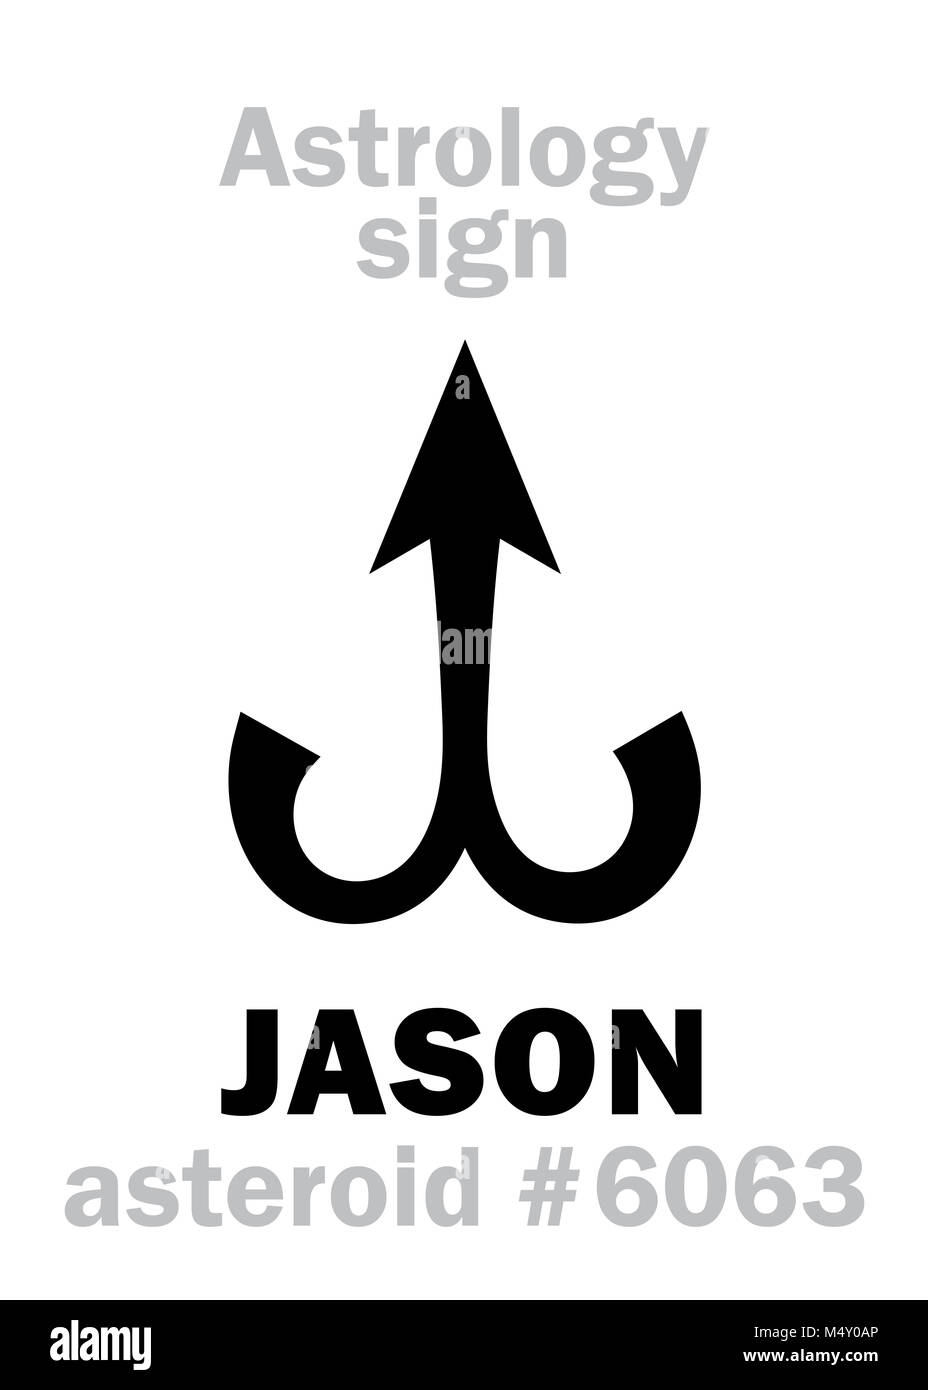 Astrology: asteroid JASON Stock Photo